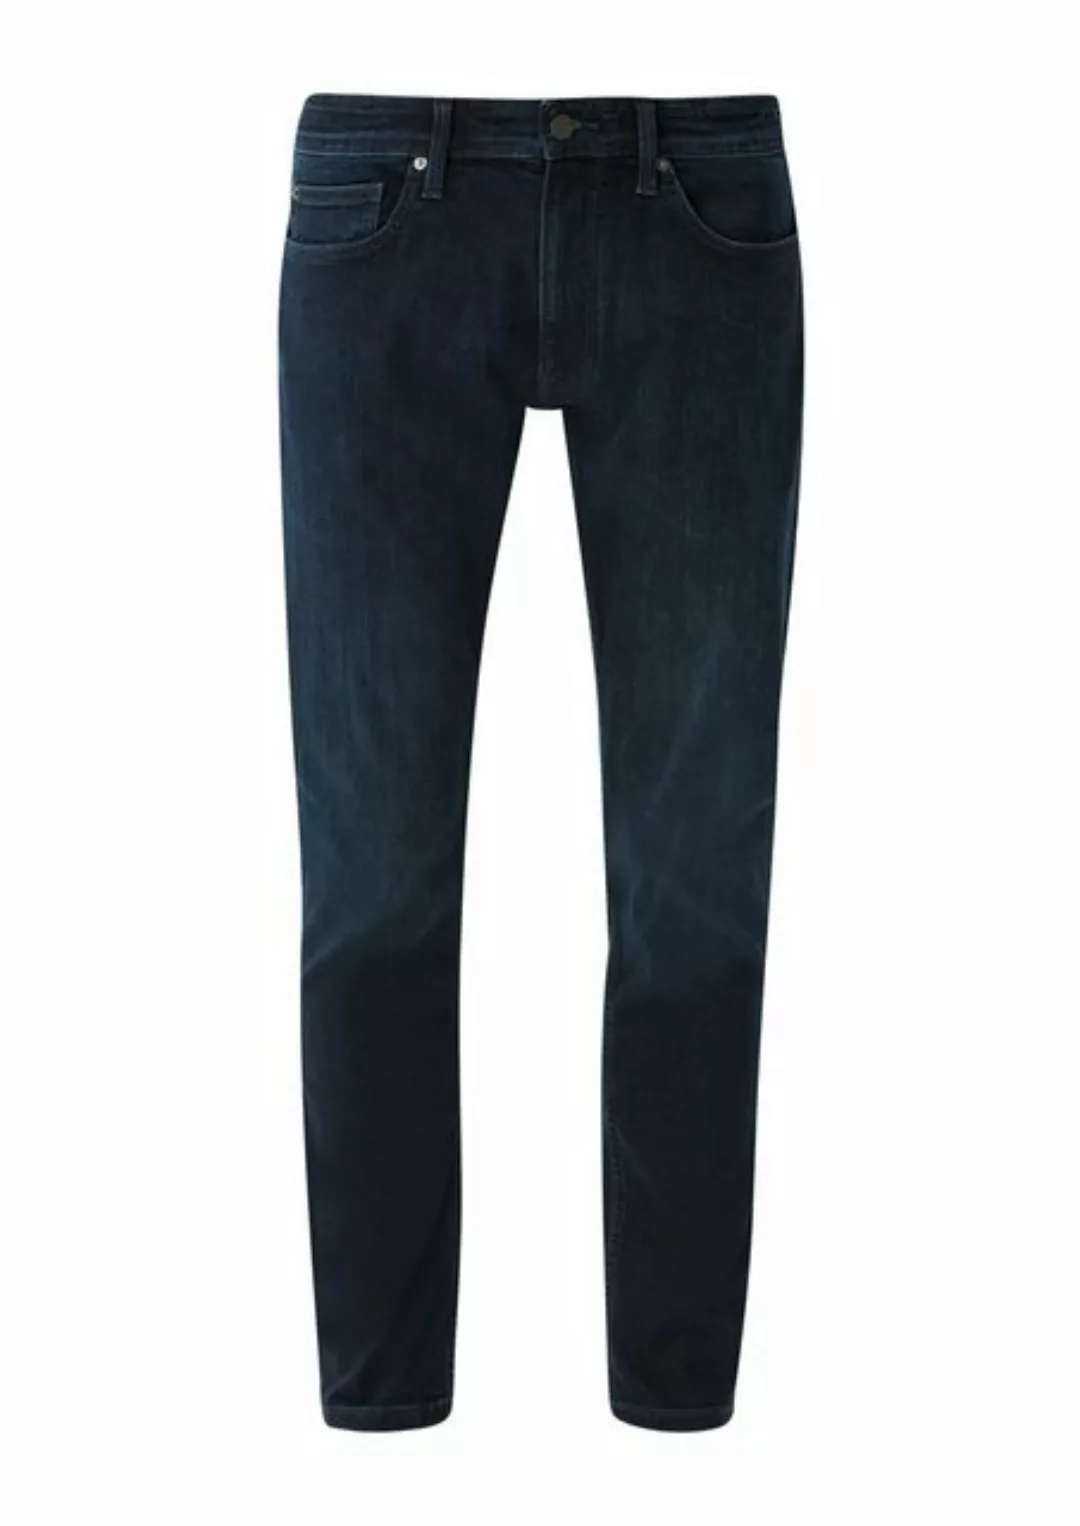 s.Oliver Bequeme Jeans mit Gesäß- und Eingrifftaschen günstig online kaufen